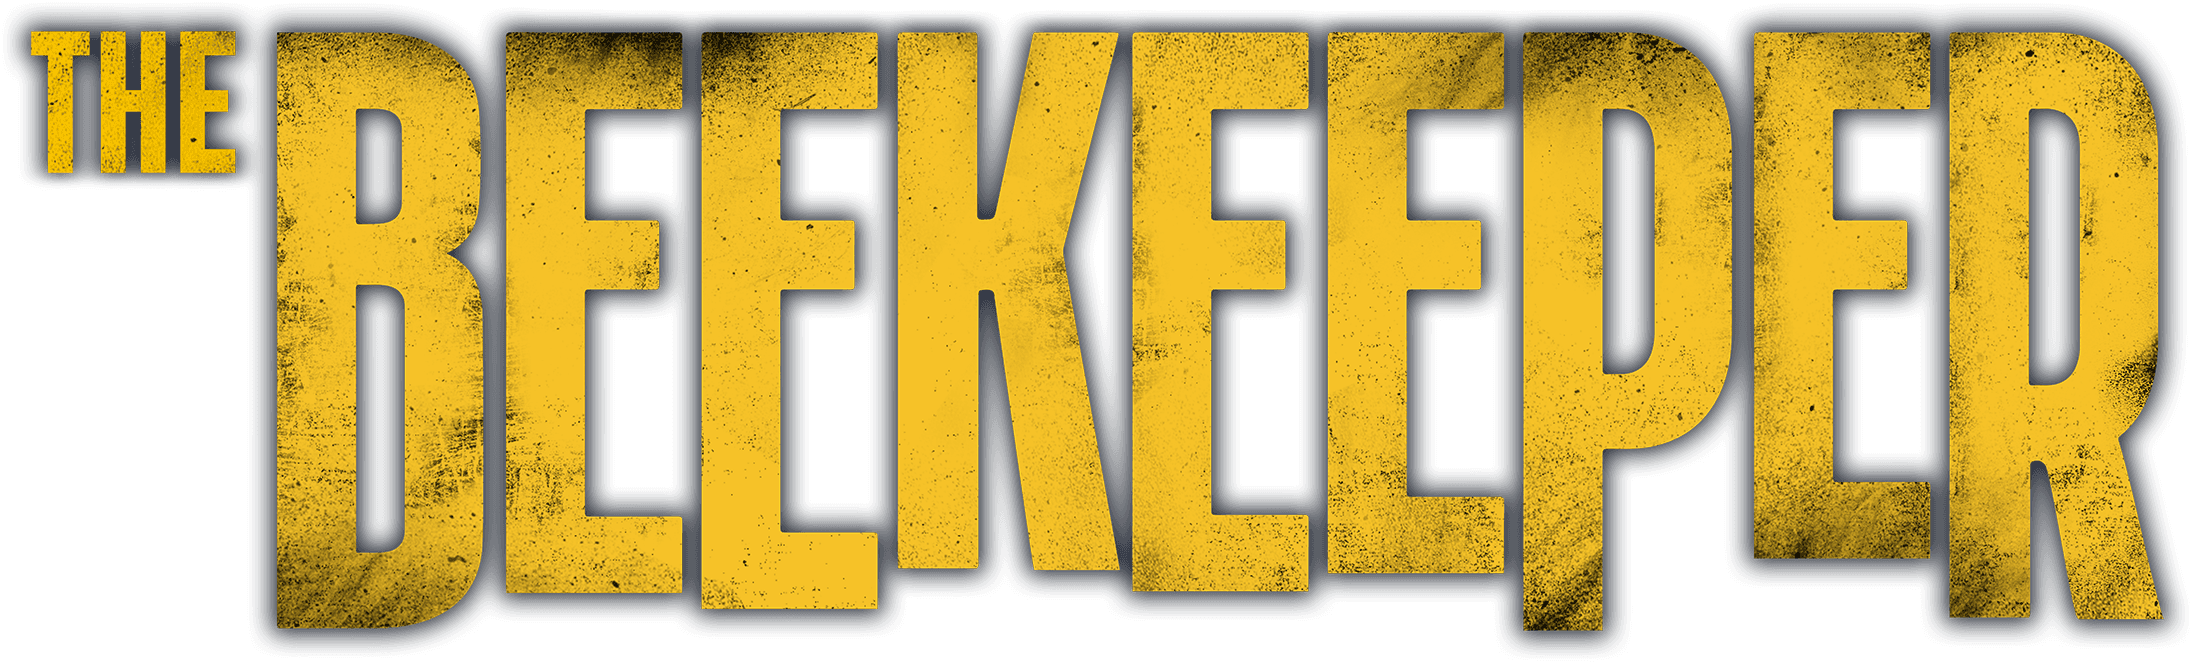 The Beekeeper logo